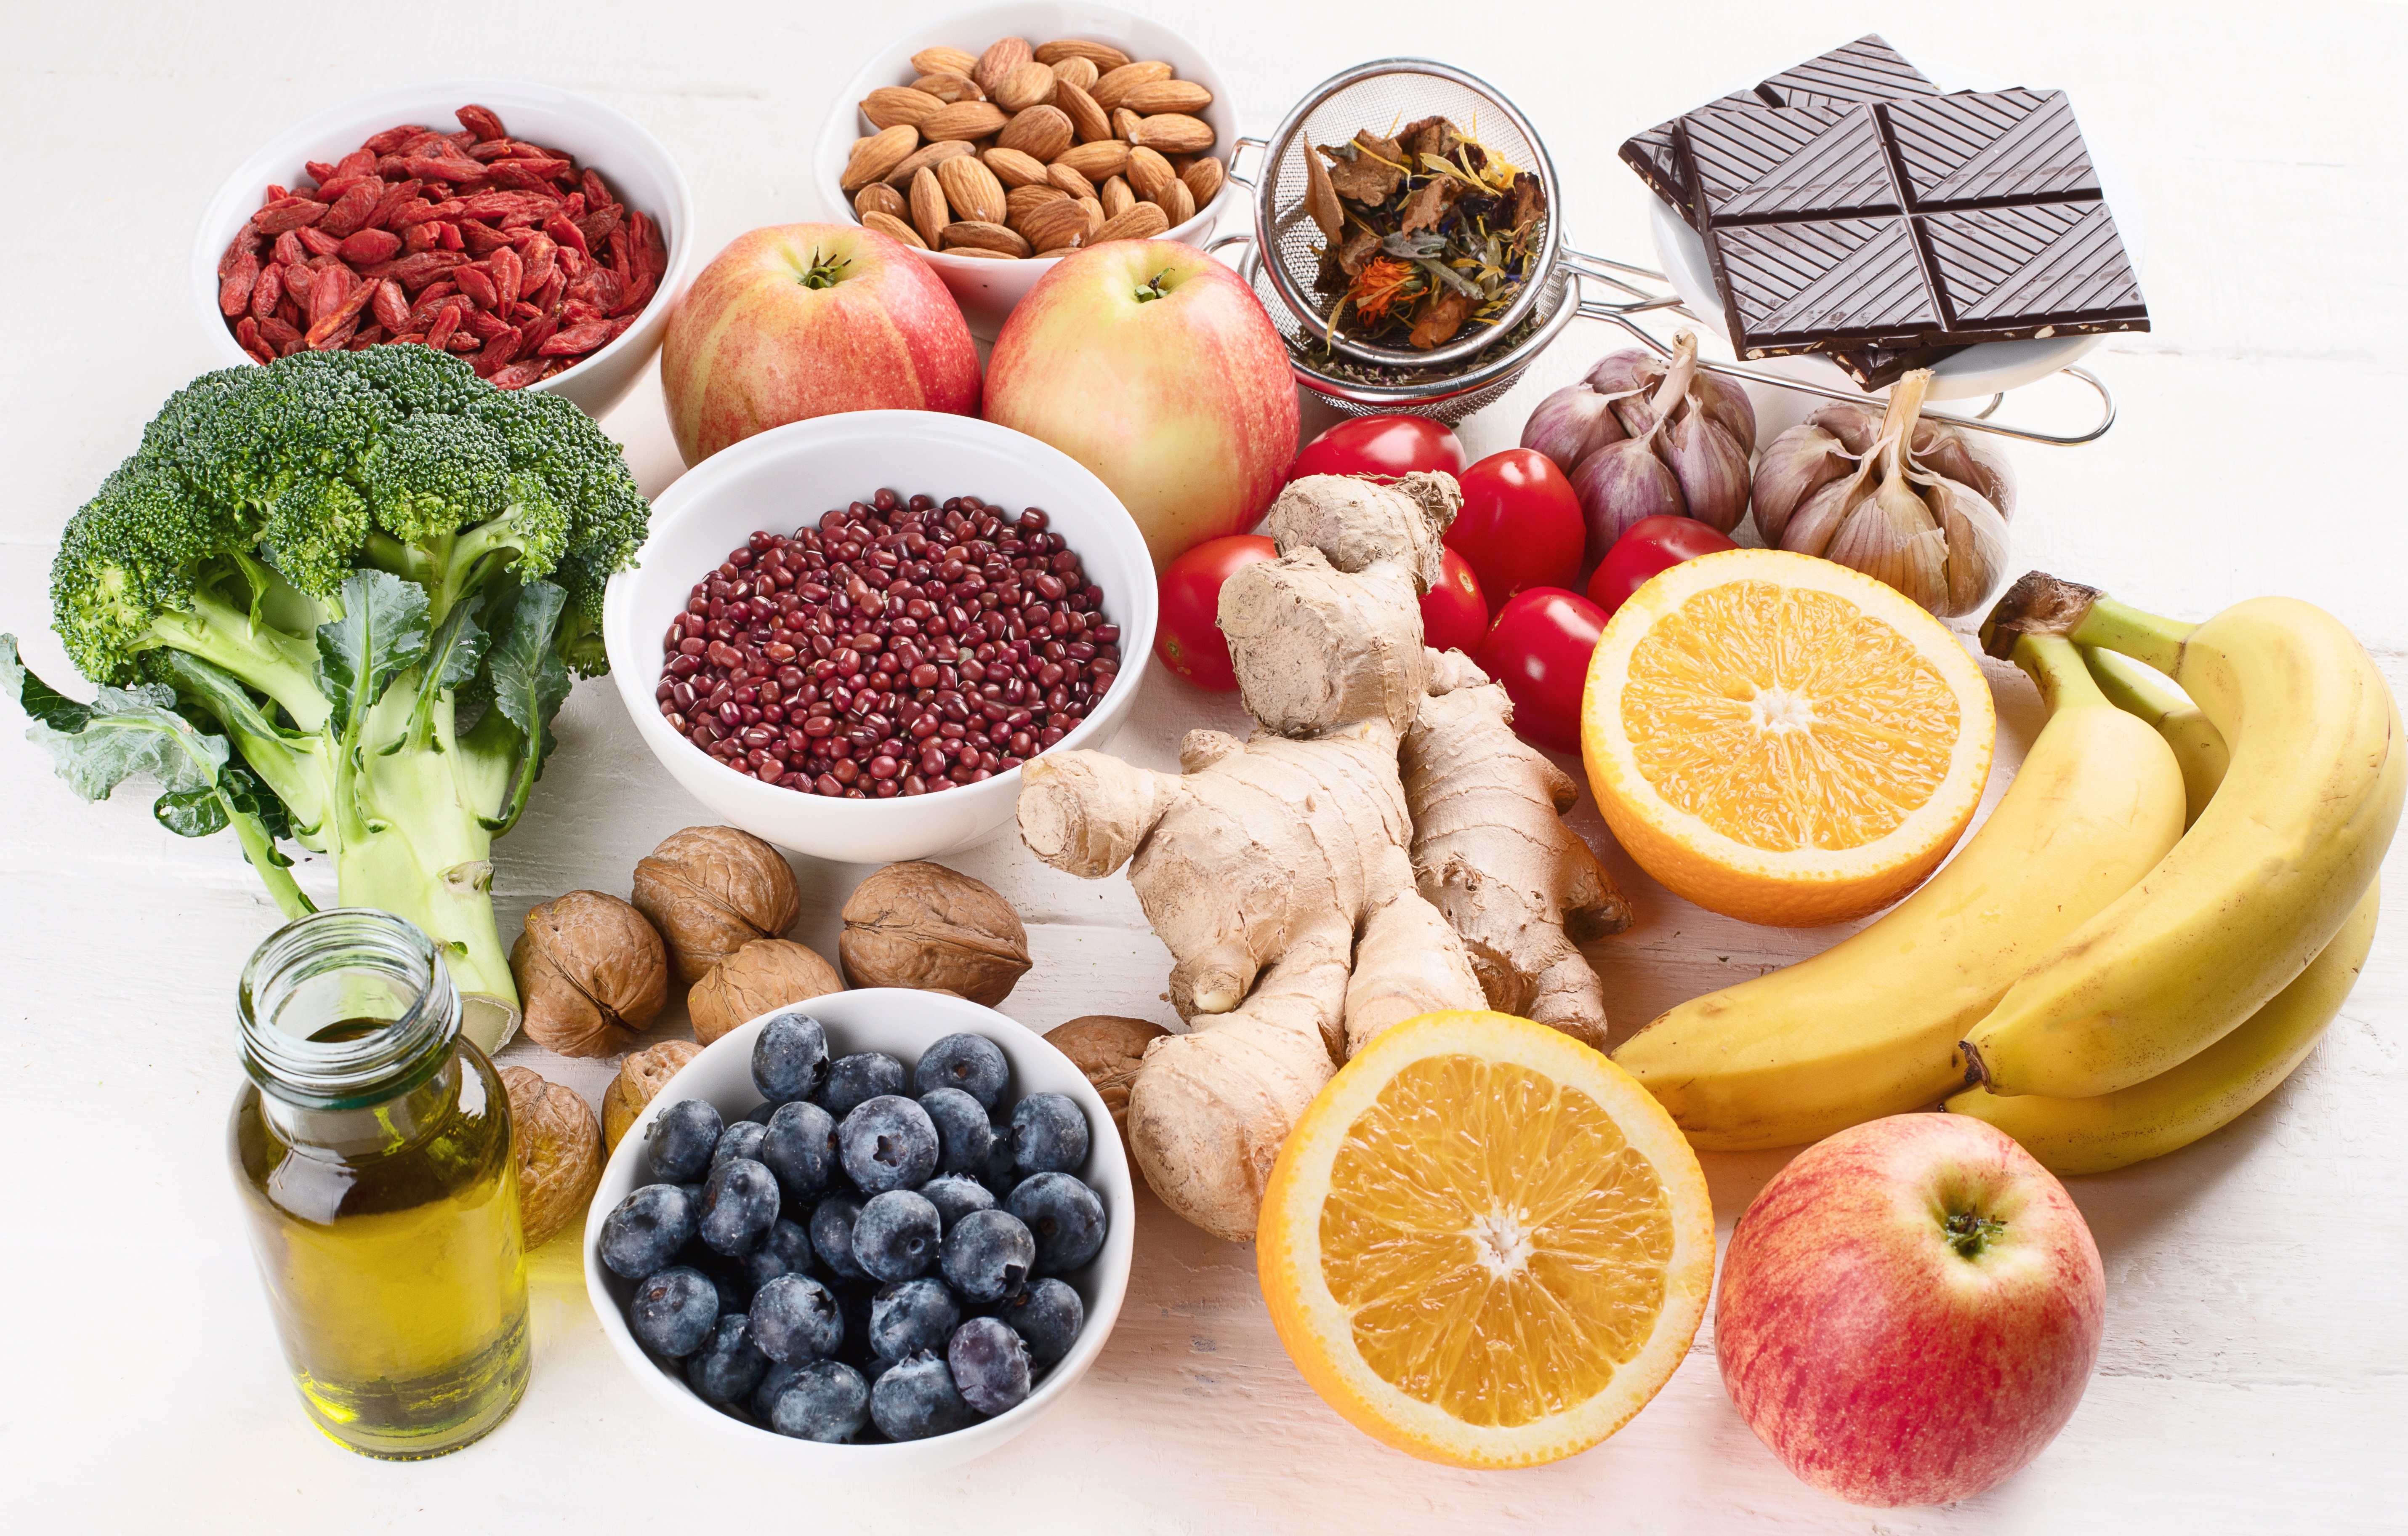 Els polifenols de la dieta poden millorar la salut de la gent gran en induir la producció del metabòlit IPA, un postbiòtic amb propietats antioxidants, neuroprotectores i antiinflamatòries.